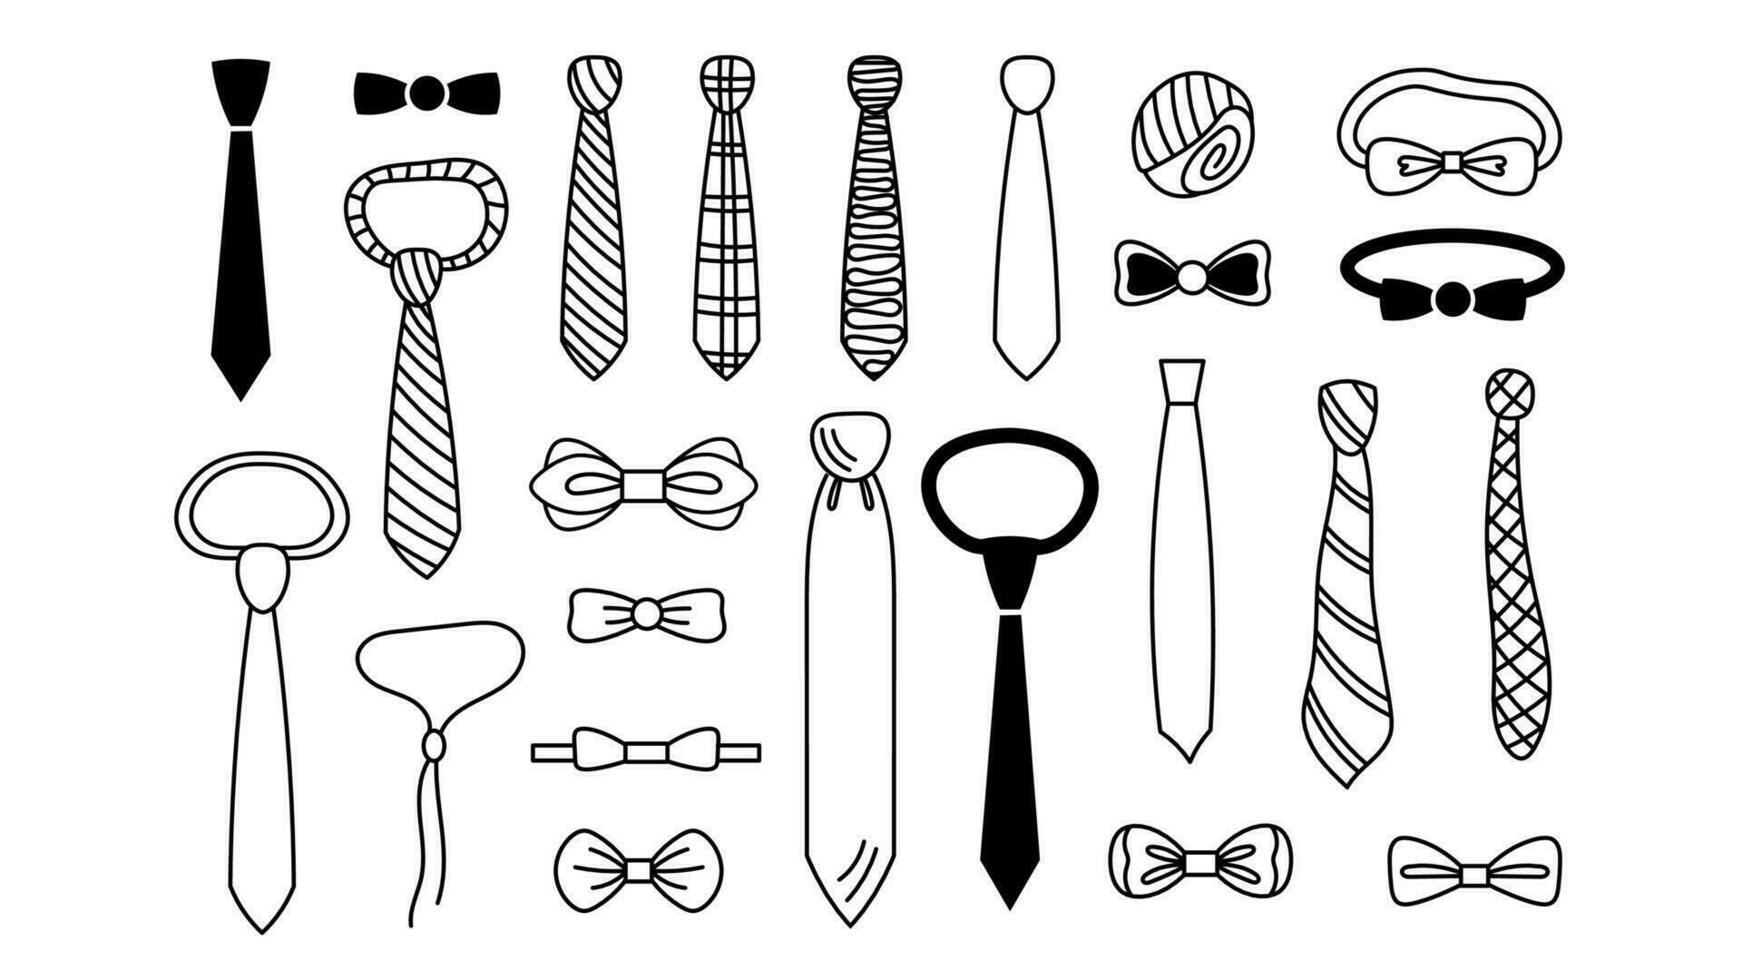 Bow tie and necktie doodle set vector